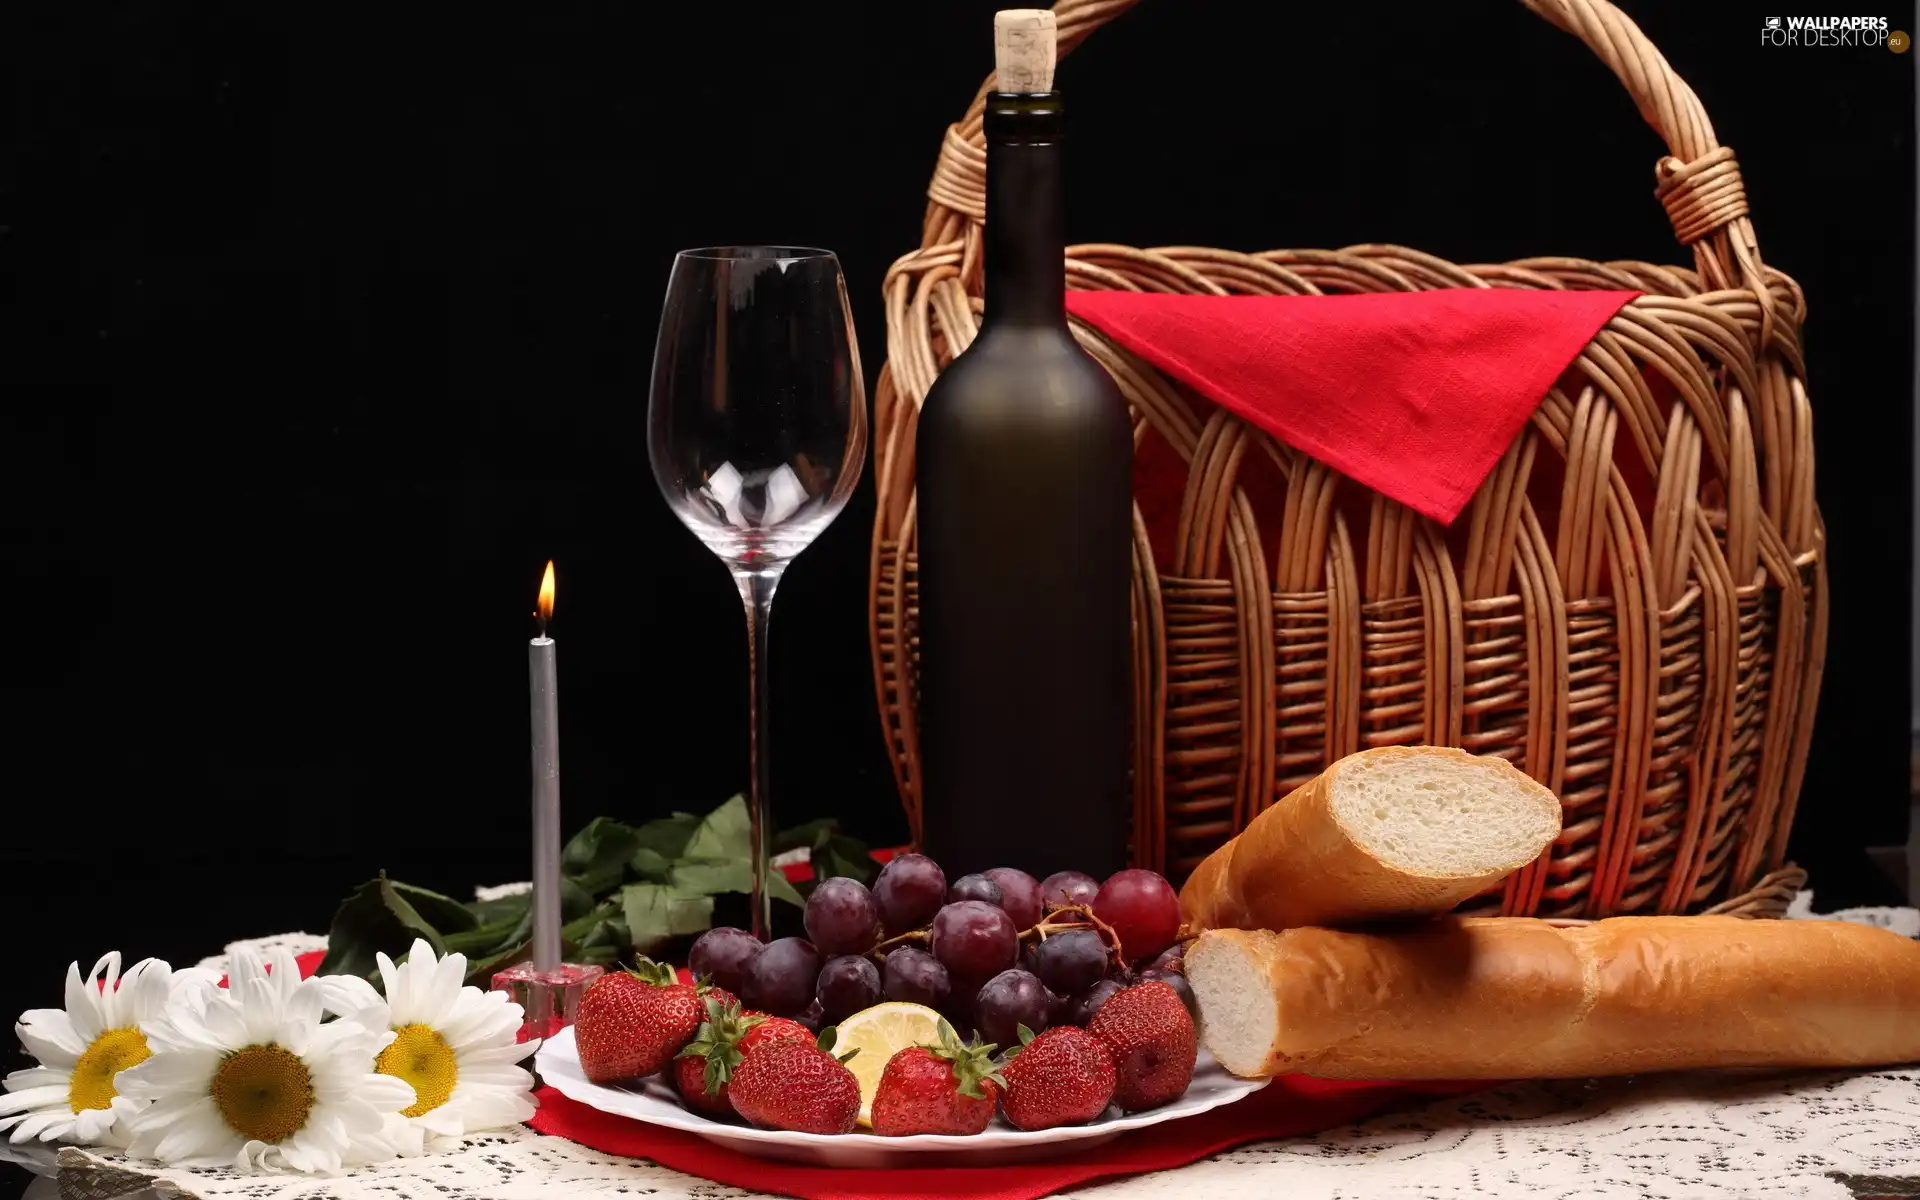 basket, Fruits, glasses, Wine